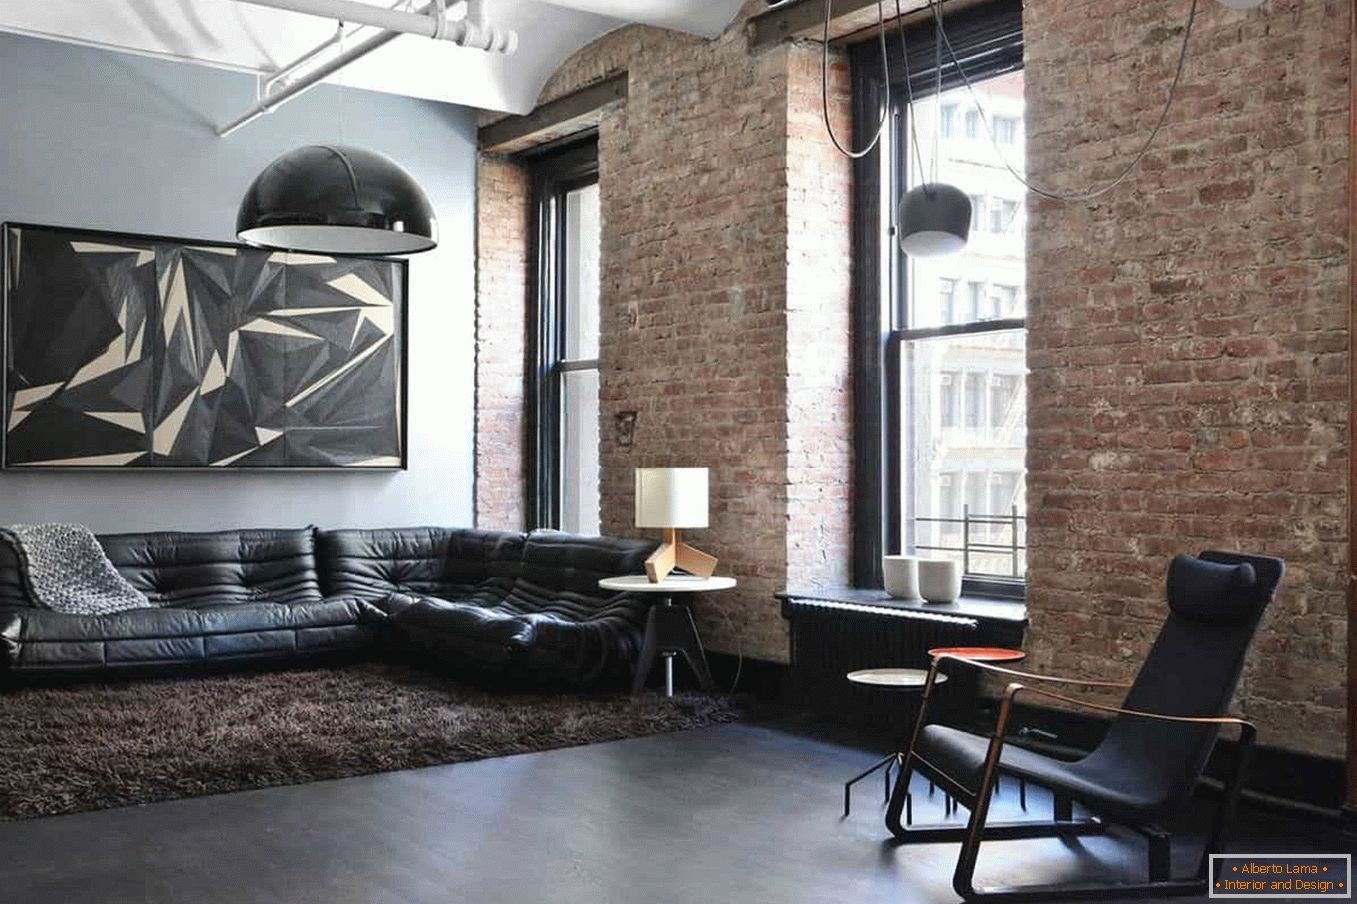 Kombinacija zidova obojenih i opeke u dnevnoj sobi u stilu grungea